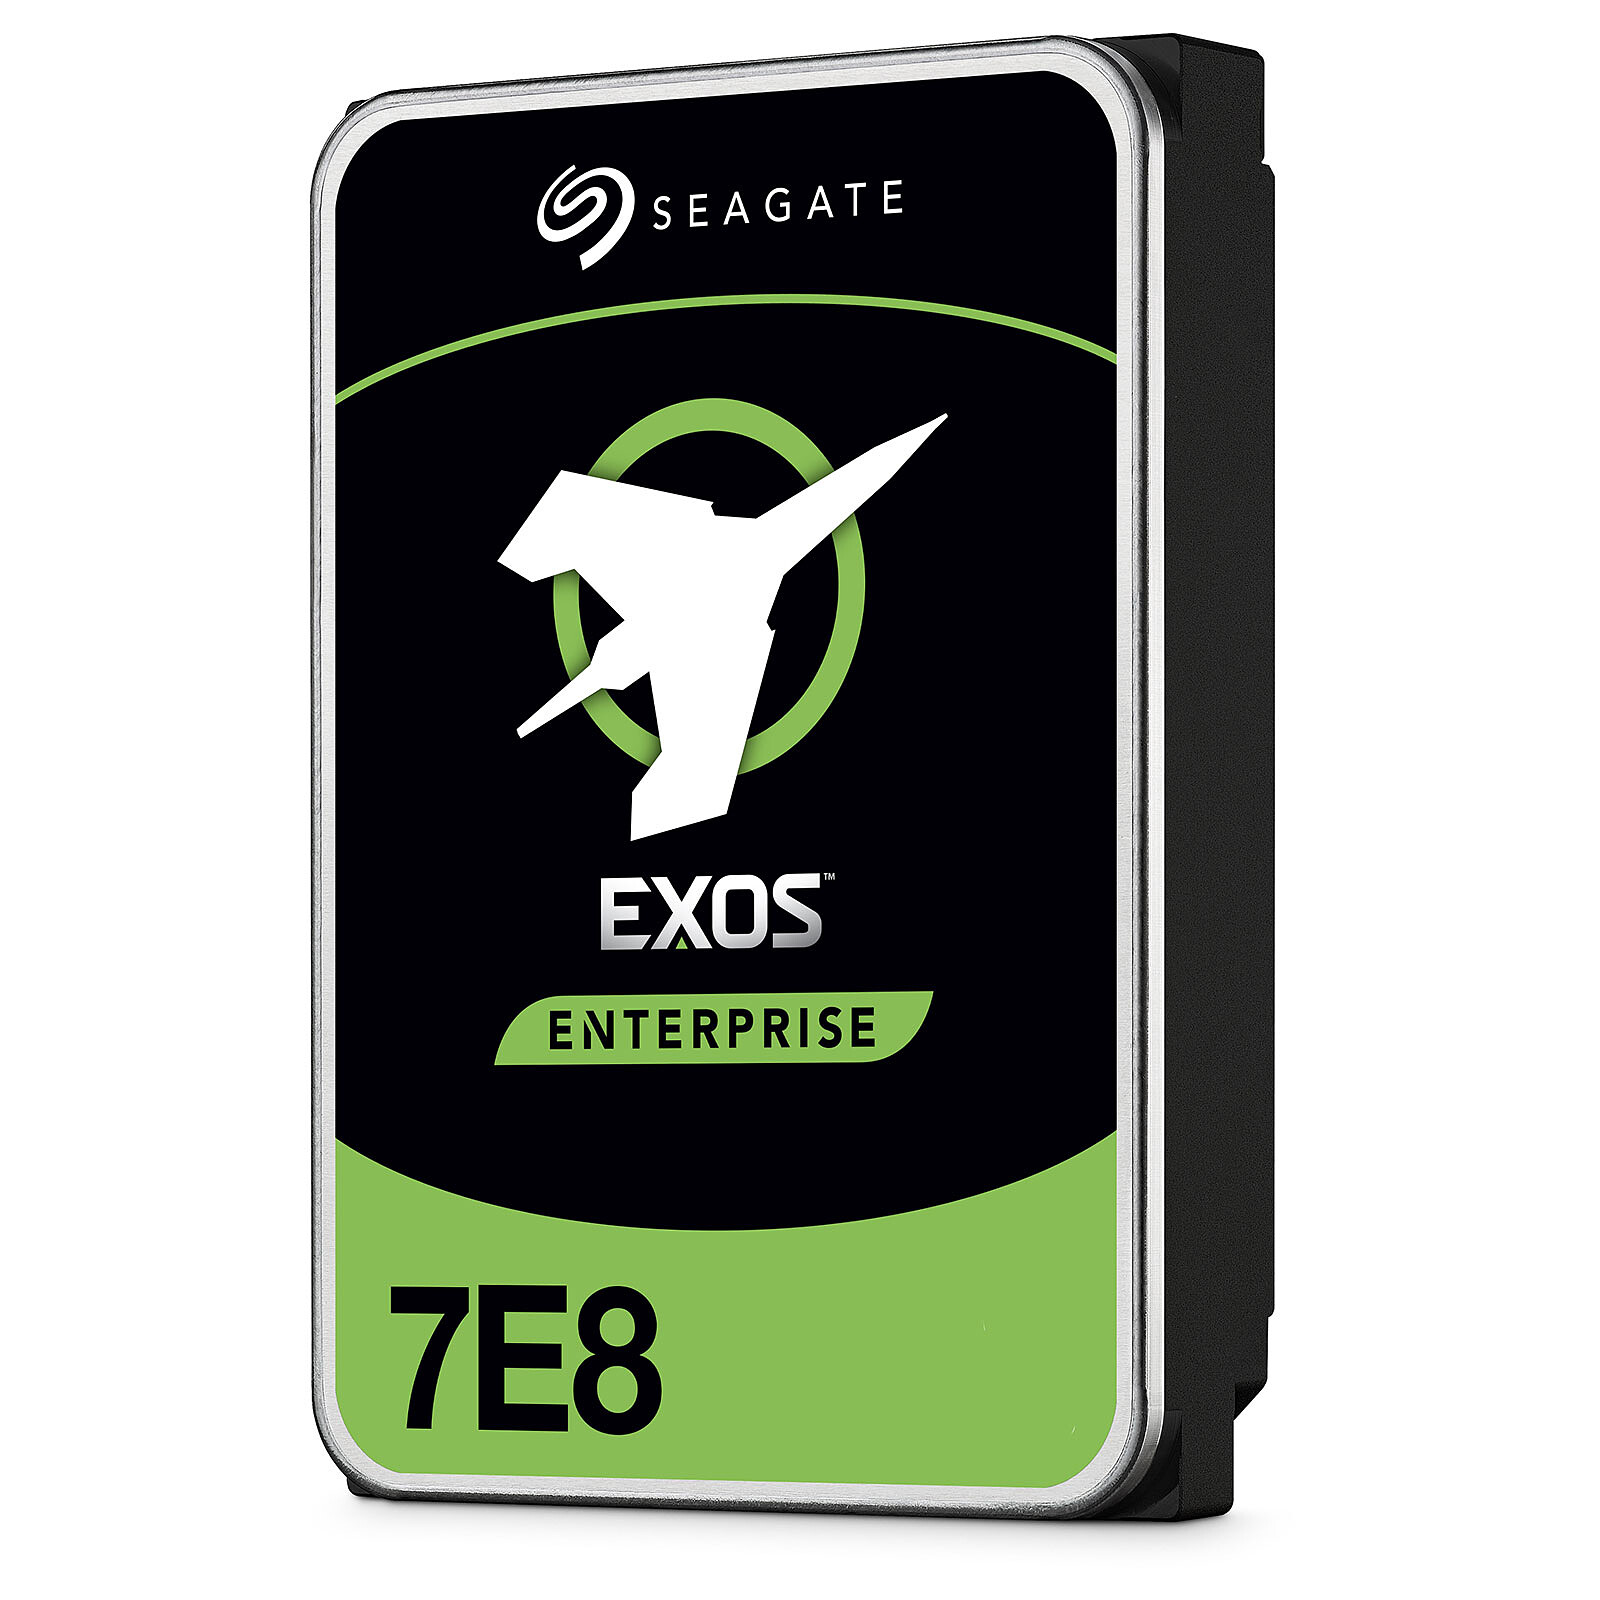 riesgo enseñar Exitoso Disco duro Seagate Exos 7E8 3.5 4Tb (ST4000NM000A) - Disco duro interno  Seagate Technology en LDLC